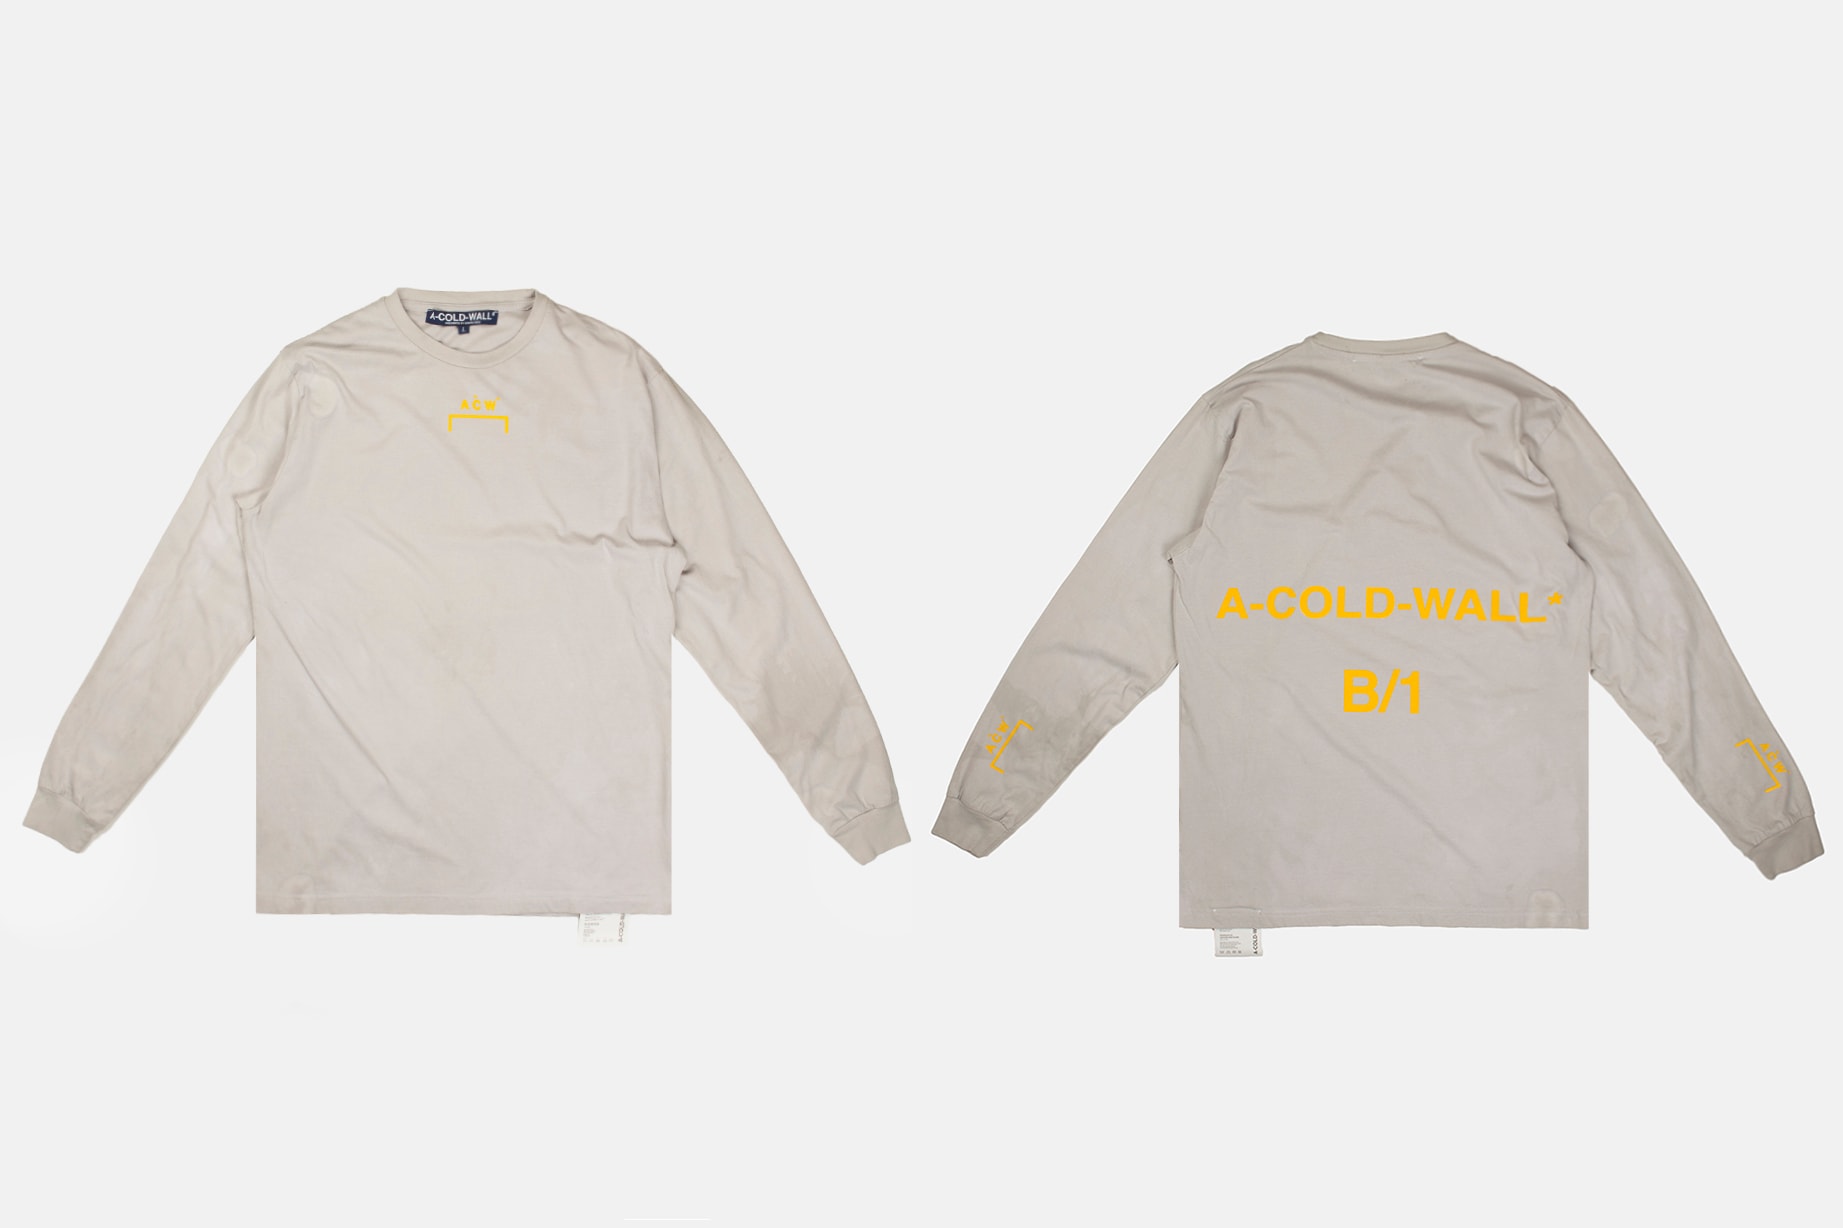 A-COLD-WALL* 香港期間限定店別注單品一覽